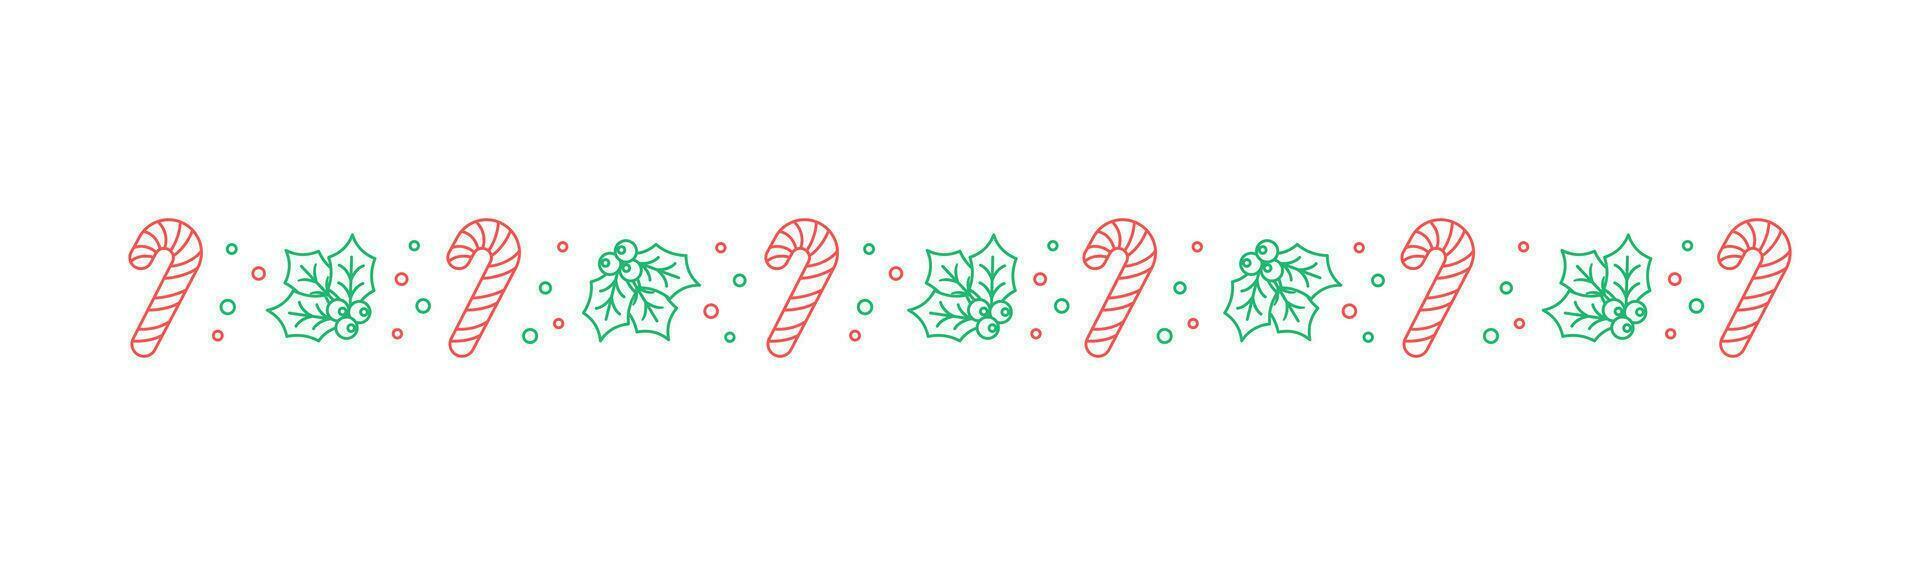 Natale a tema decorativo confine e testo divisore, vischio e caramella canna modello schema scarabocchio. vettore illustrazione.